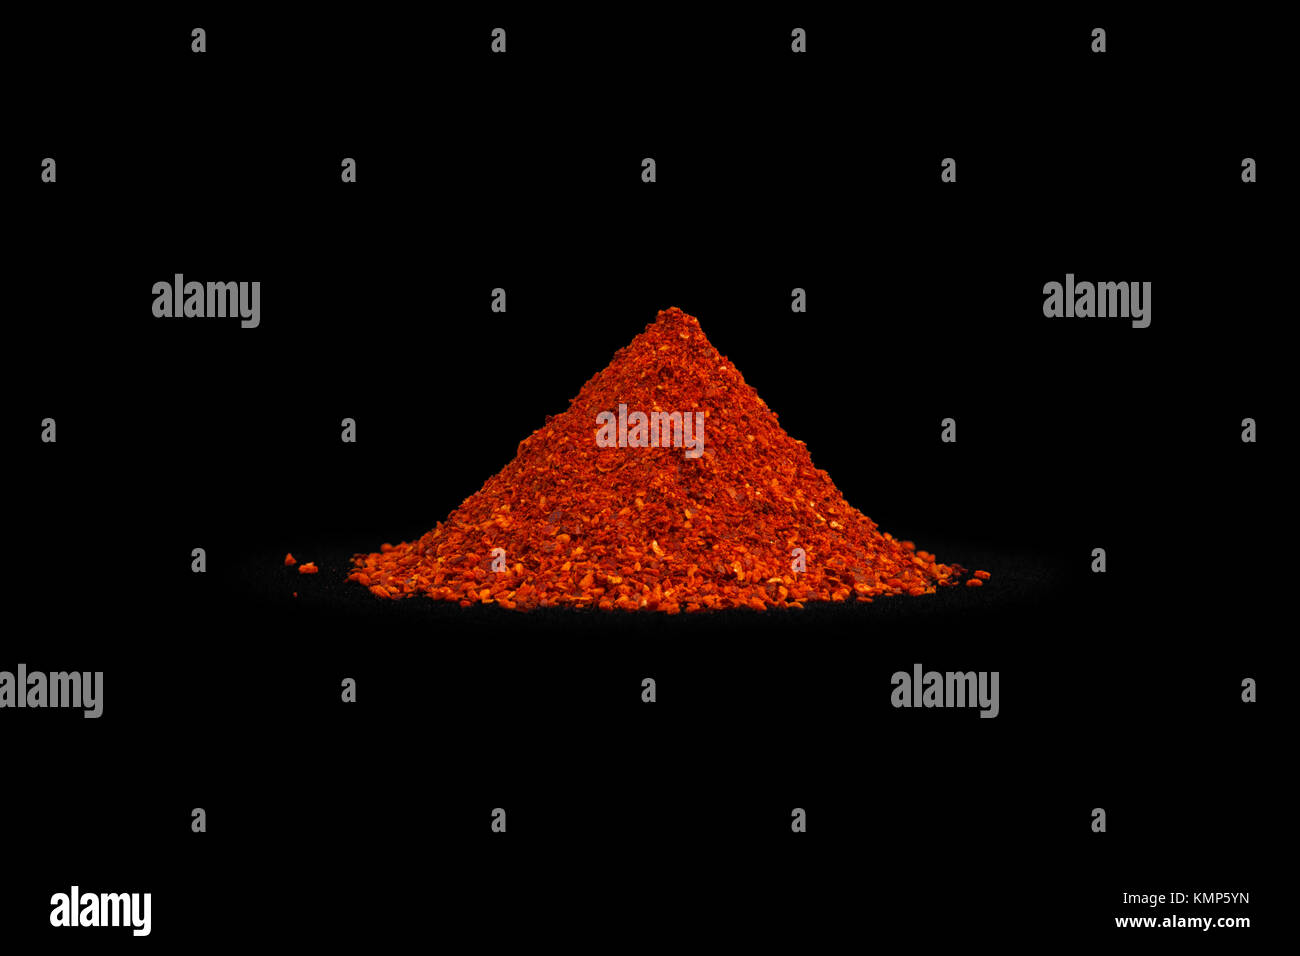 Ein Haufen von Espelette chili Pfeffer (Capsicum annuum) fotografiert auf einem schwarzen Hintergrund. Red Chili. Tas de Poudre de Piment d'Espelette. Stockfoto